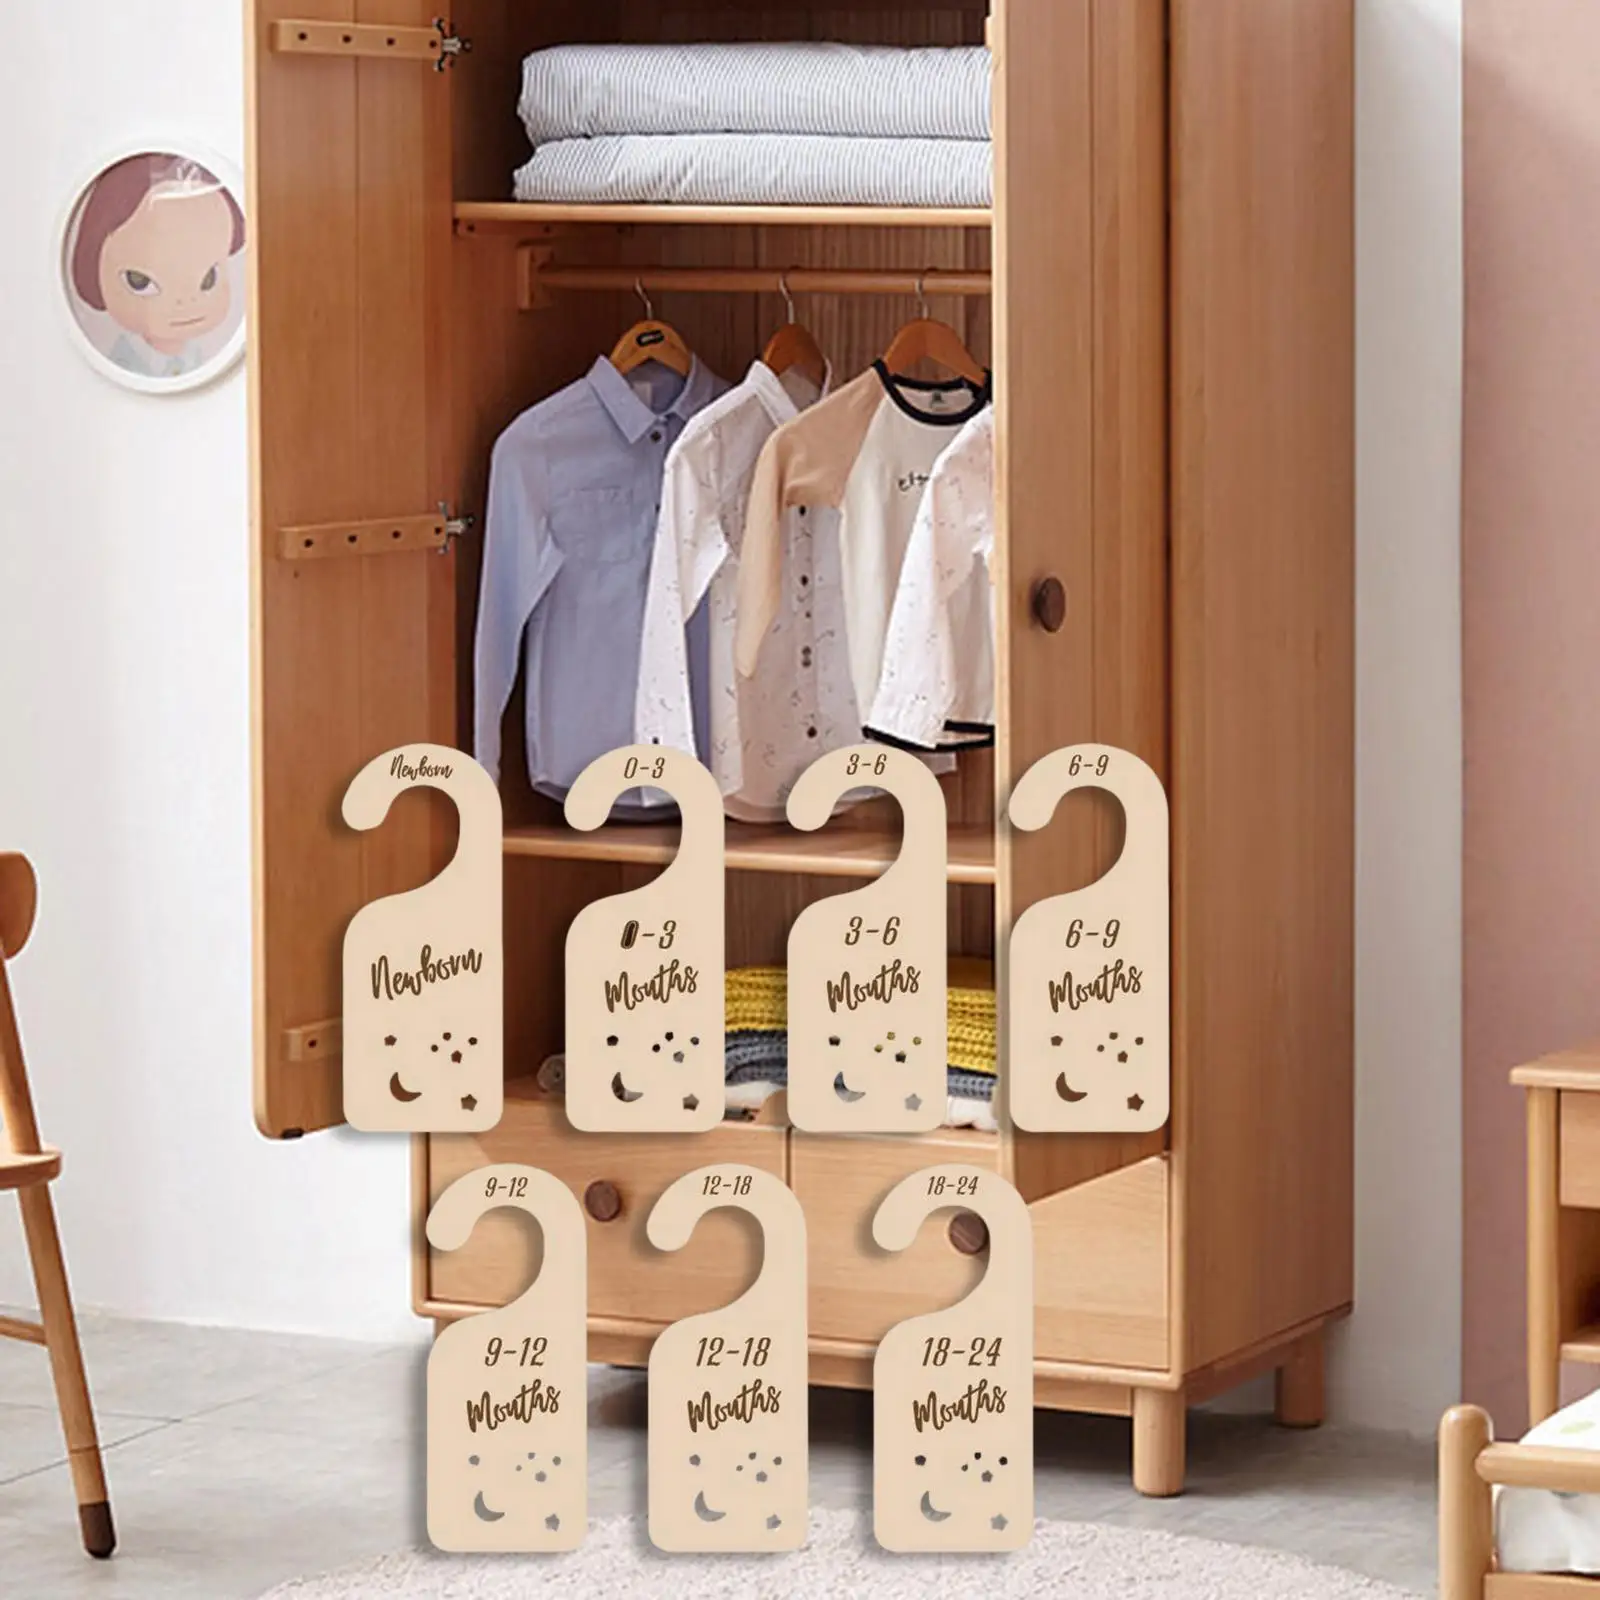 7x Wooden Closet Divider Infant Wardrobe Divider Label for Registry Shower Gifts